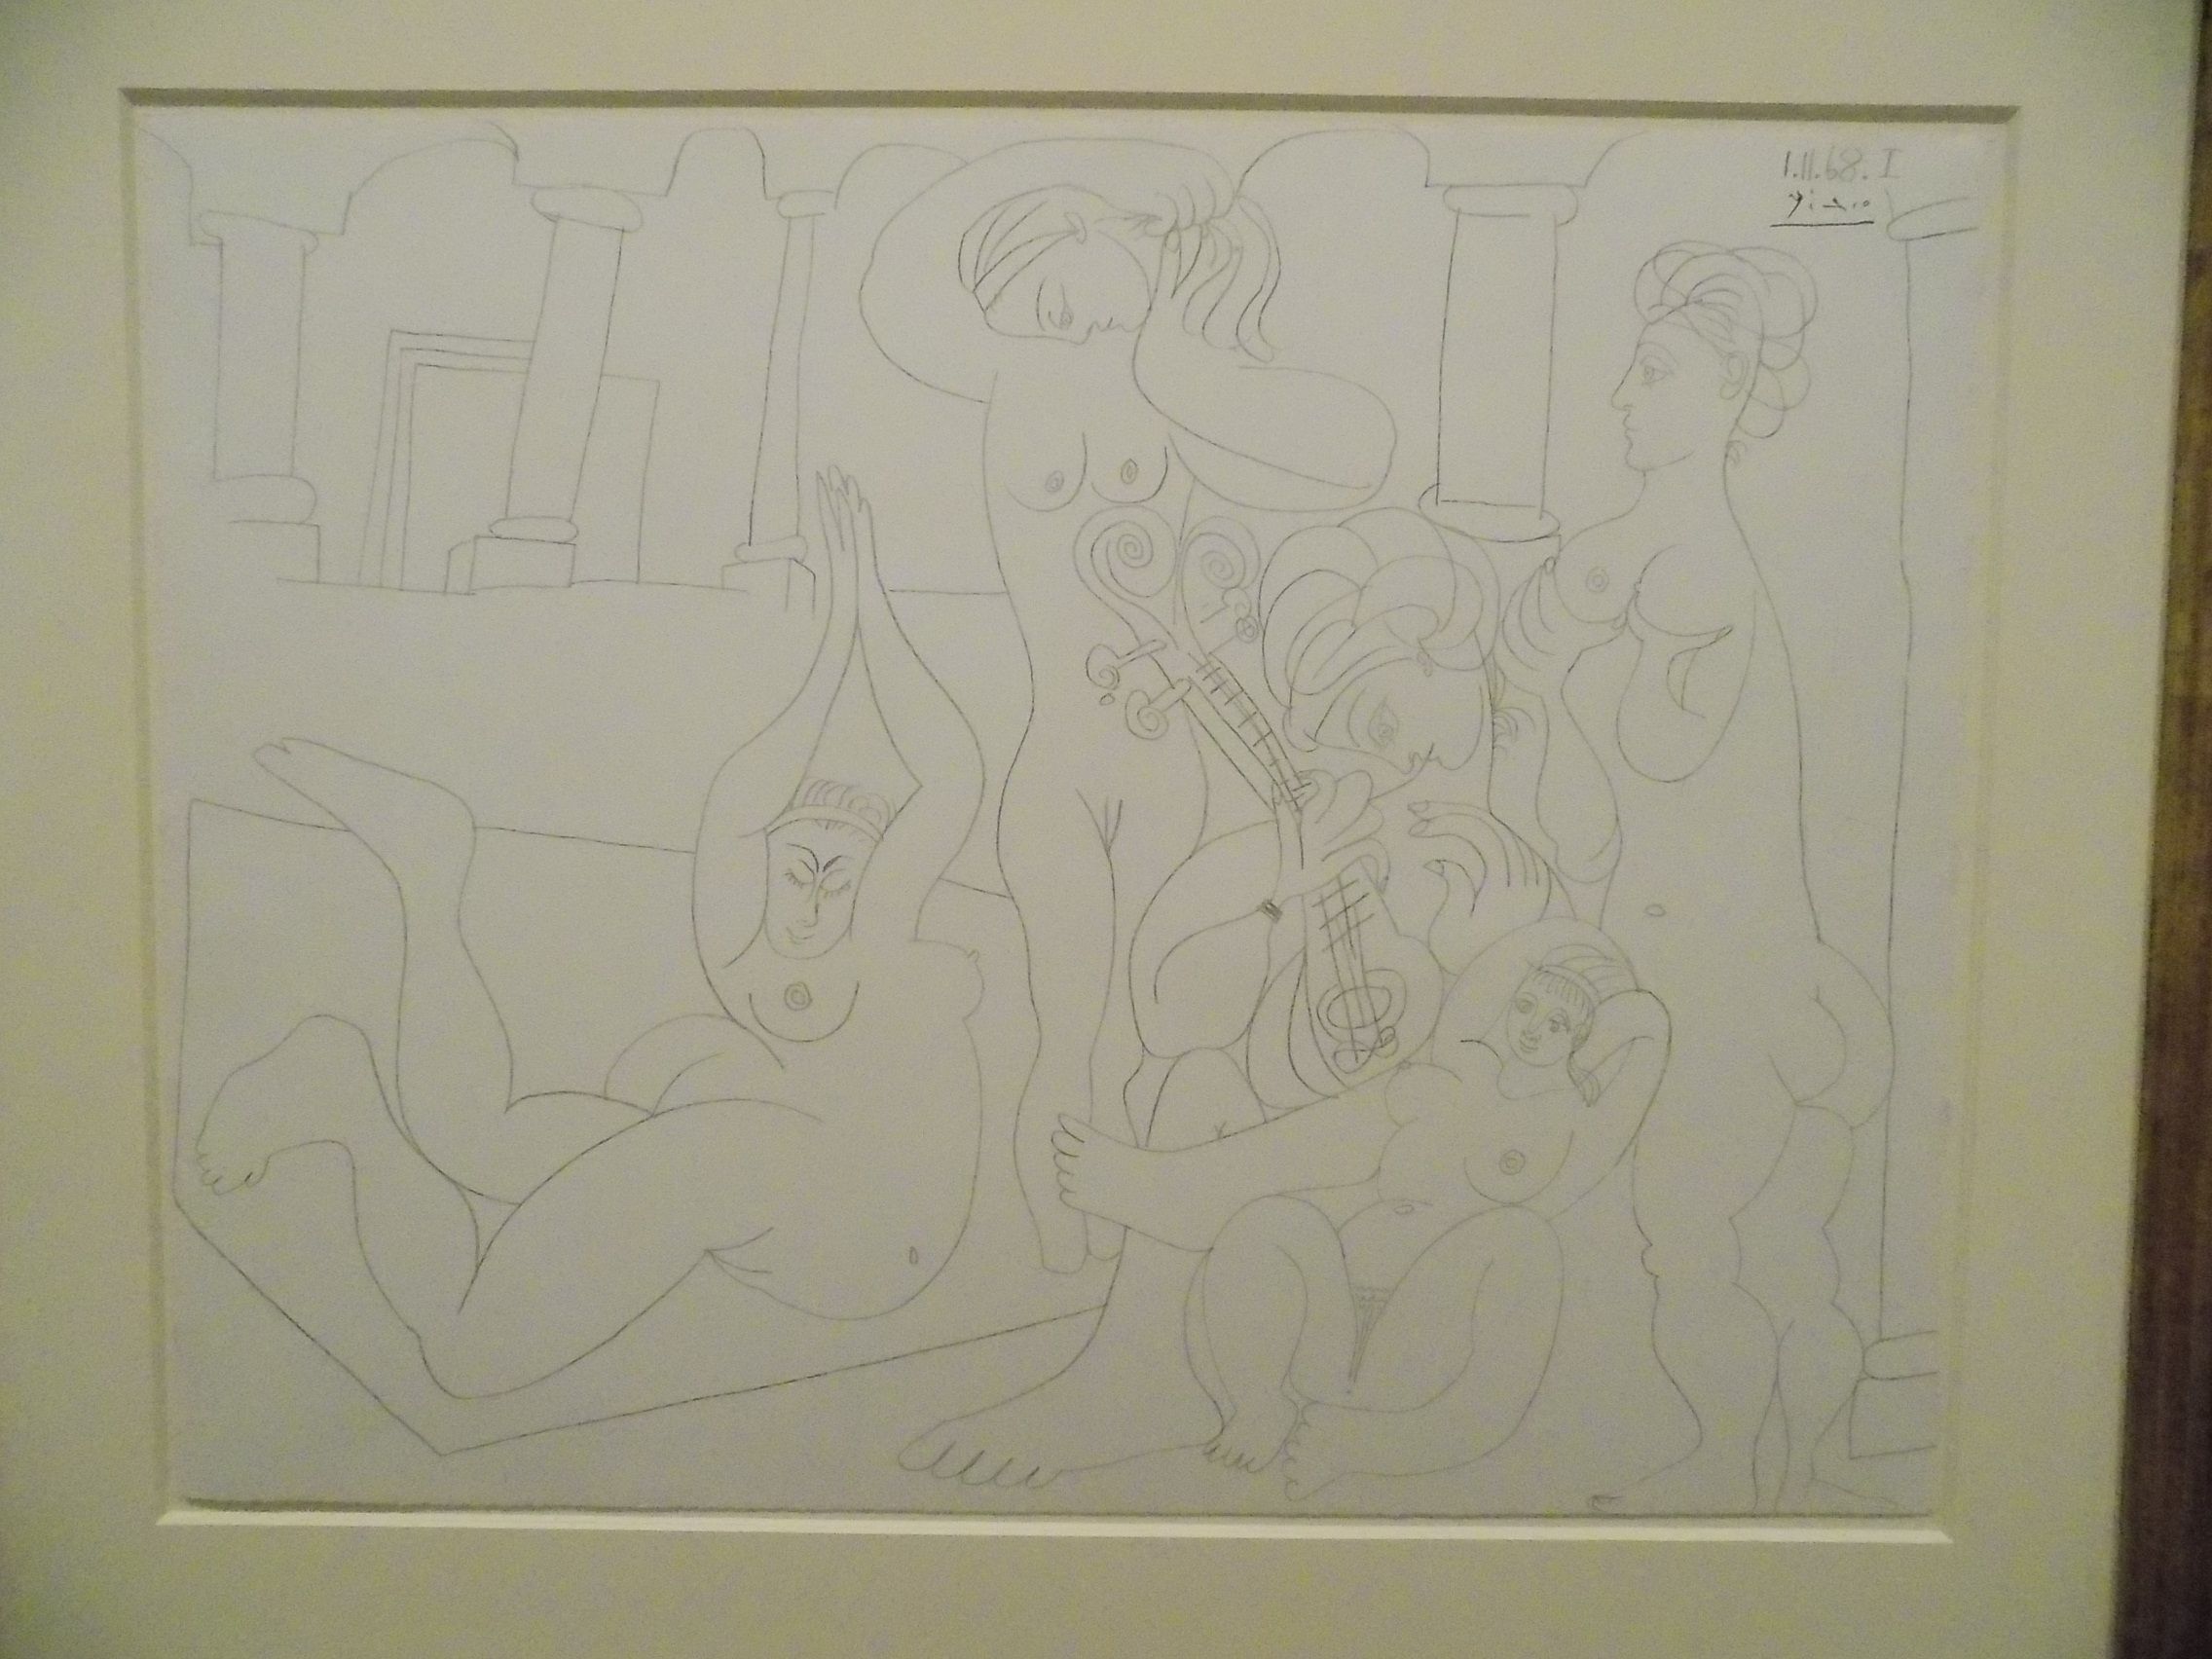 Picasso: "A Piscina" ou "O Banho", sei lá.